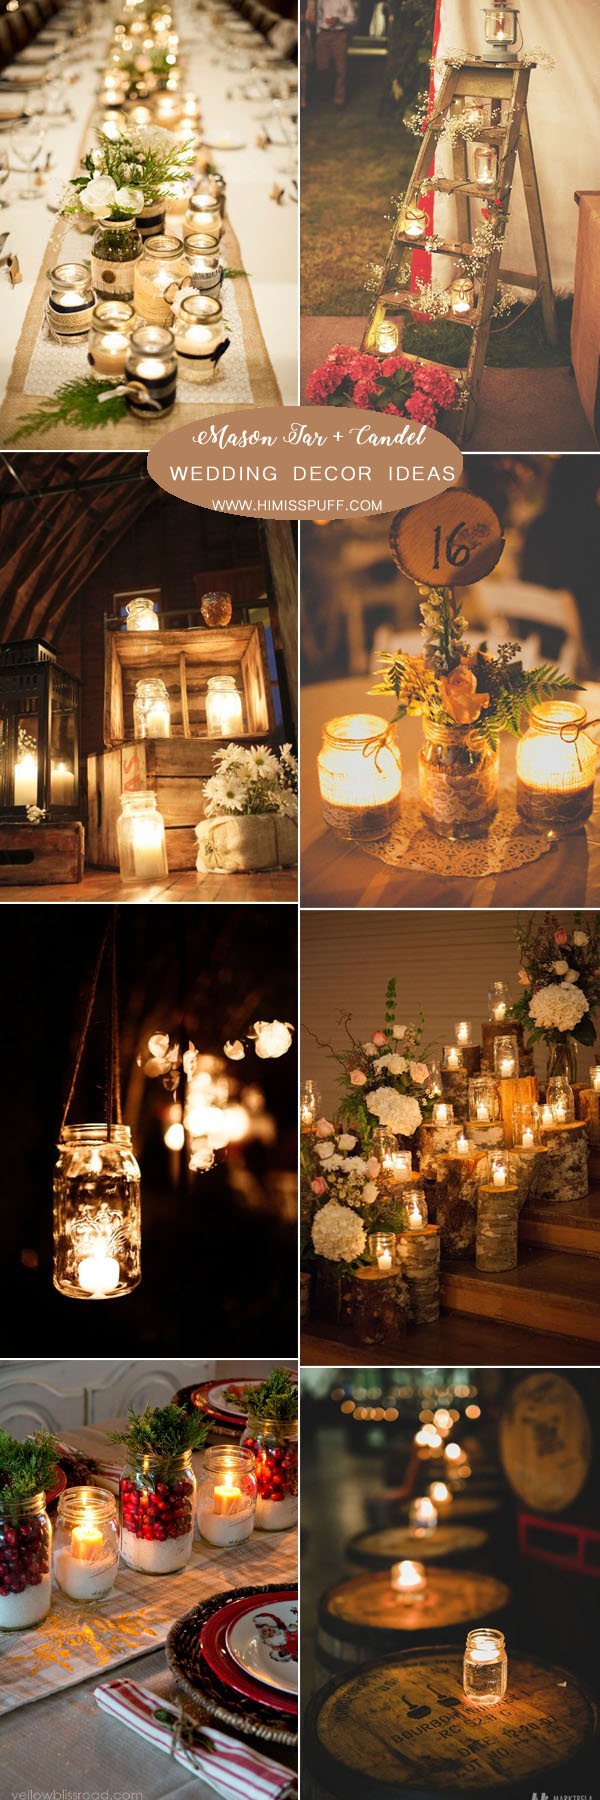 votive candle lights wedding centerpieces ideas